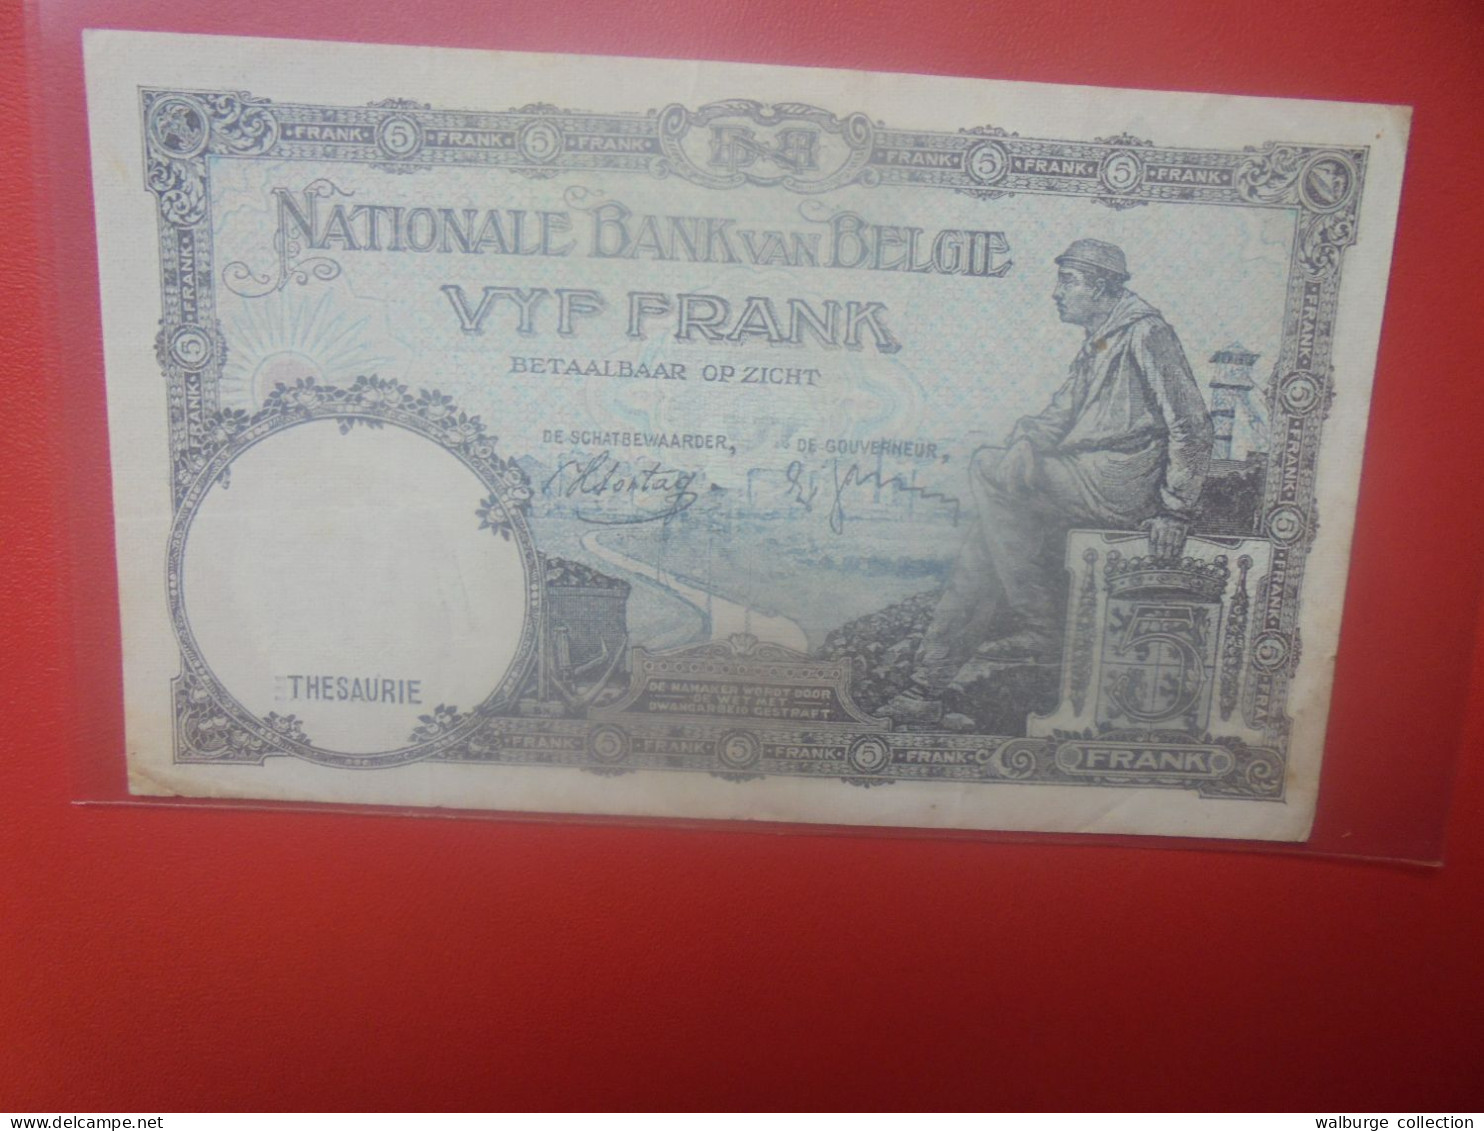 BELGIQUE 5 Francs 1938/88 Circuler (B.18/34) - 5 Francs